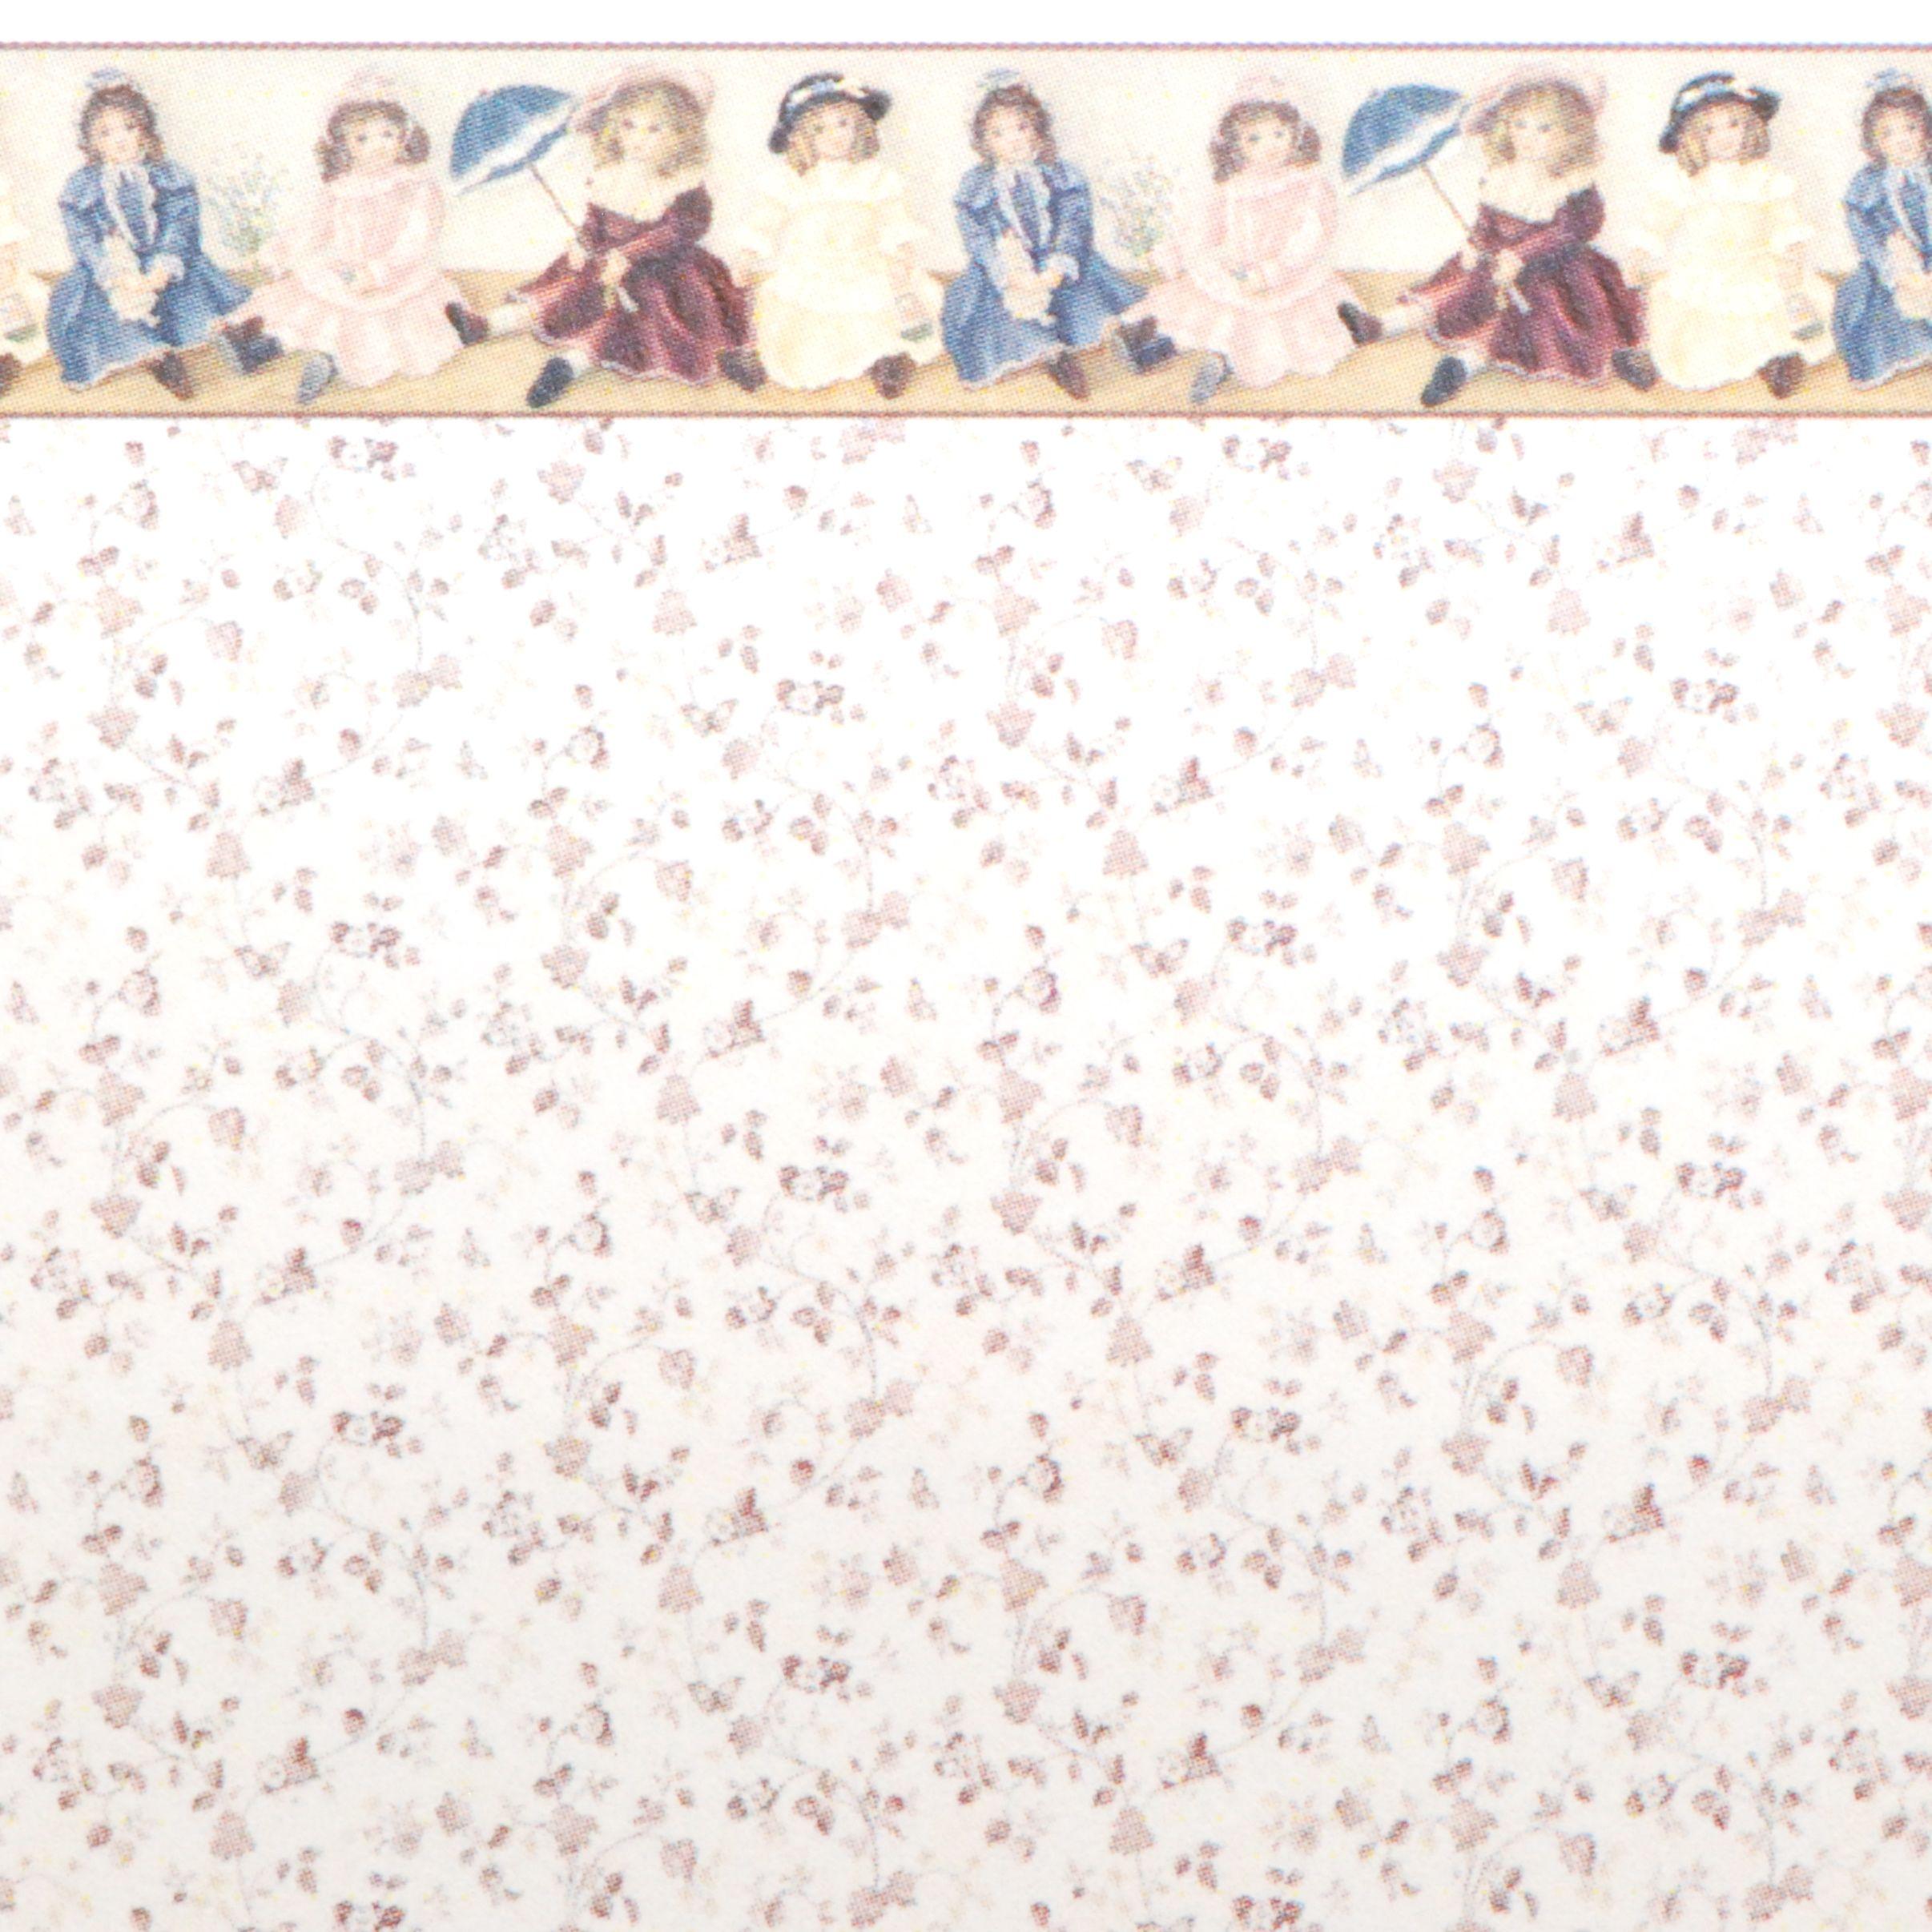 jennifers free printable dollhouse wallpaper down loads